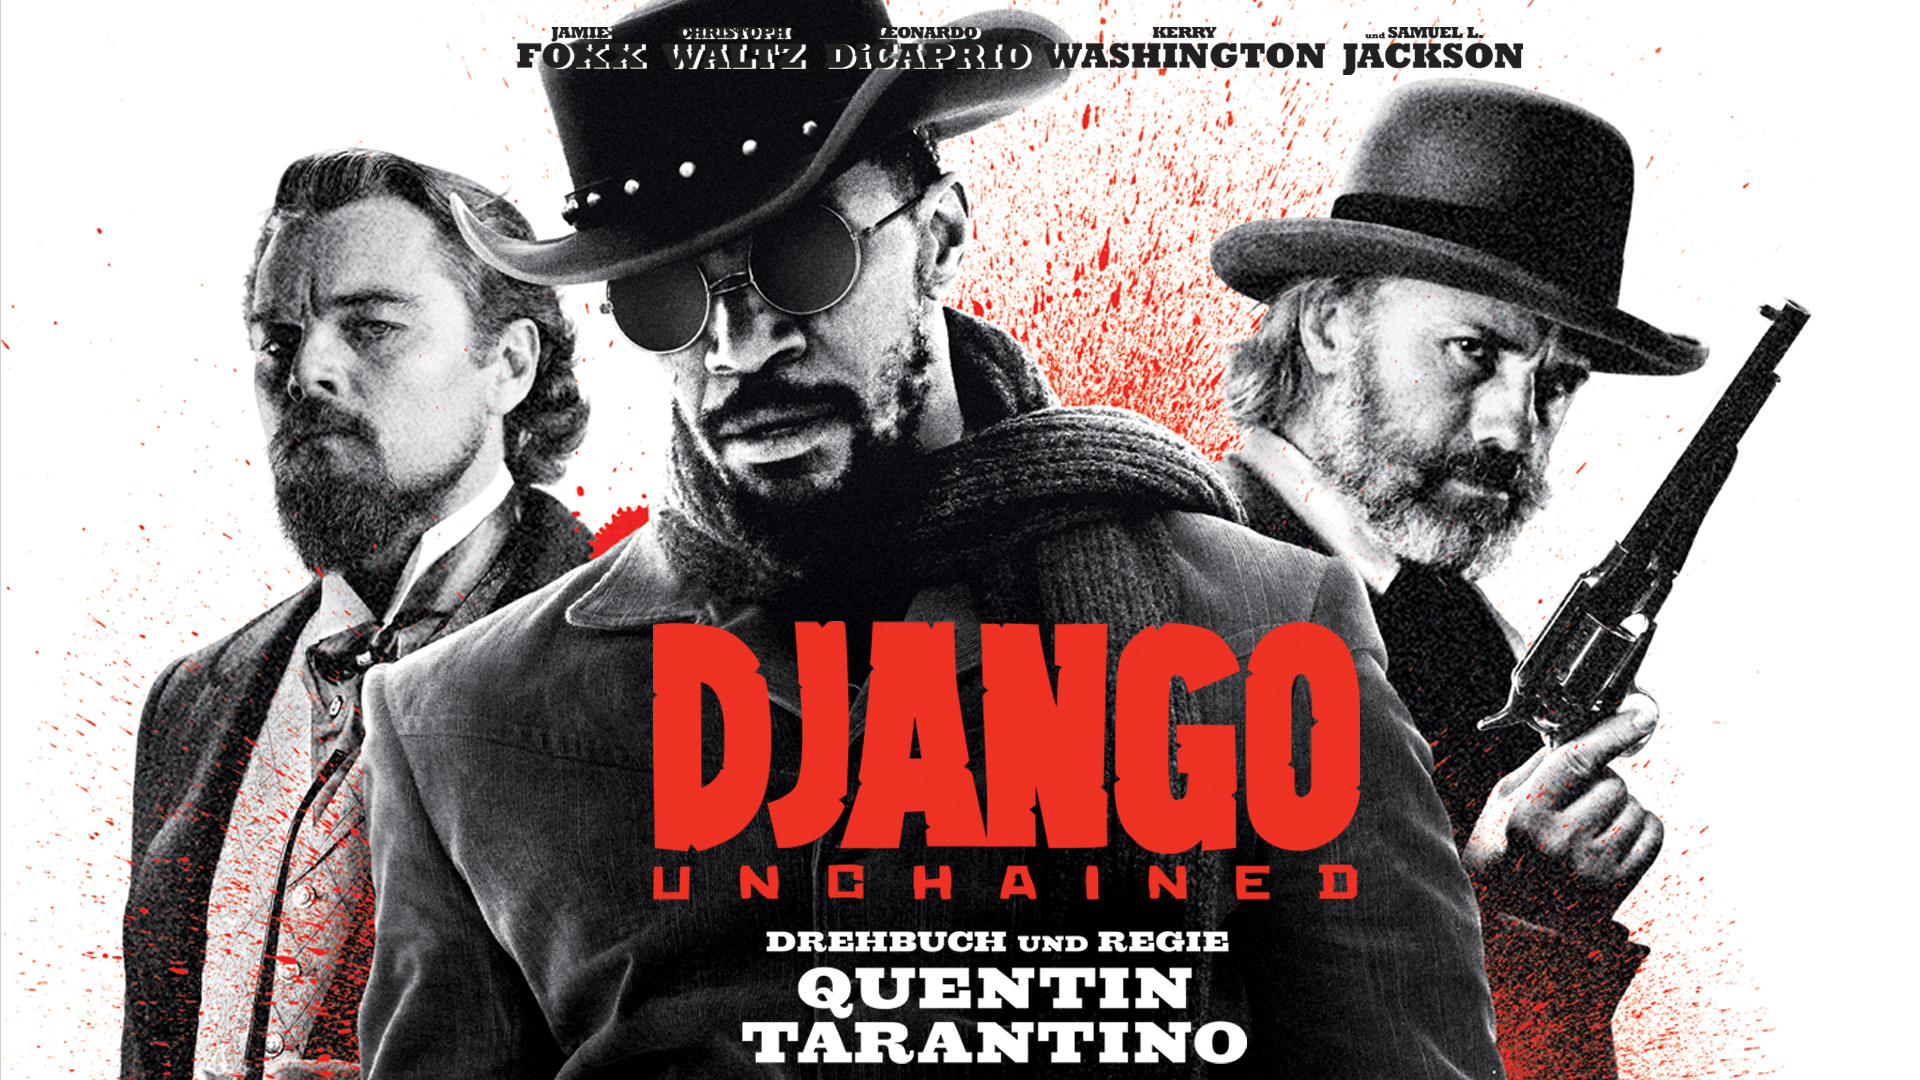 Tarantino'nun “Django Unchained” senaryosuna dava